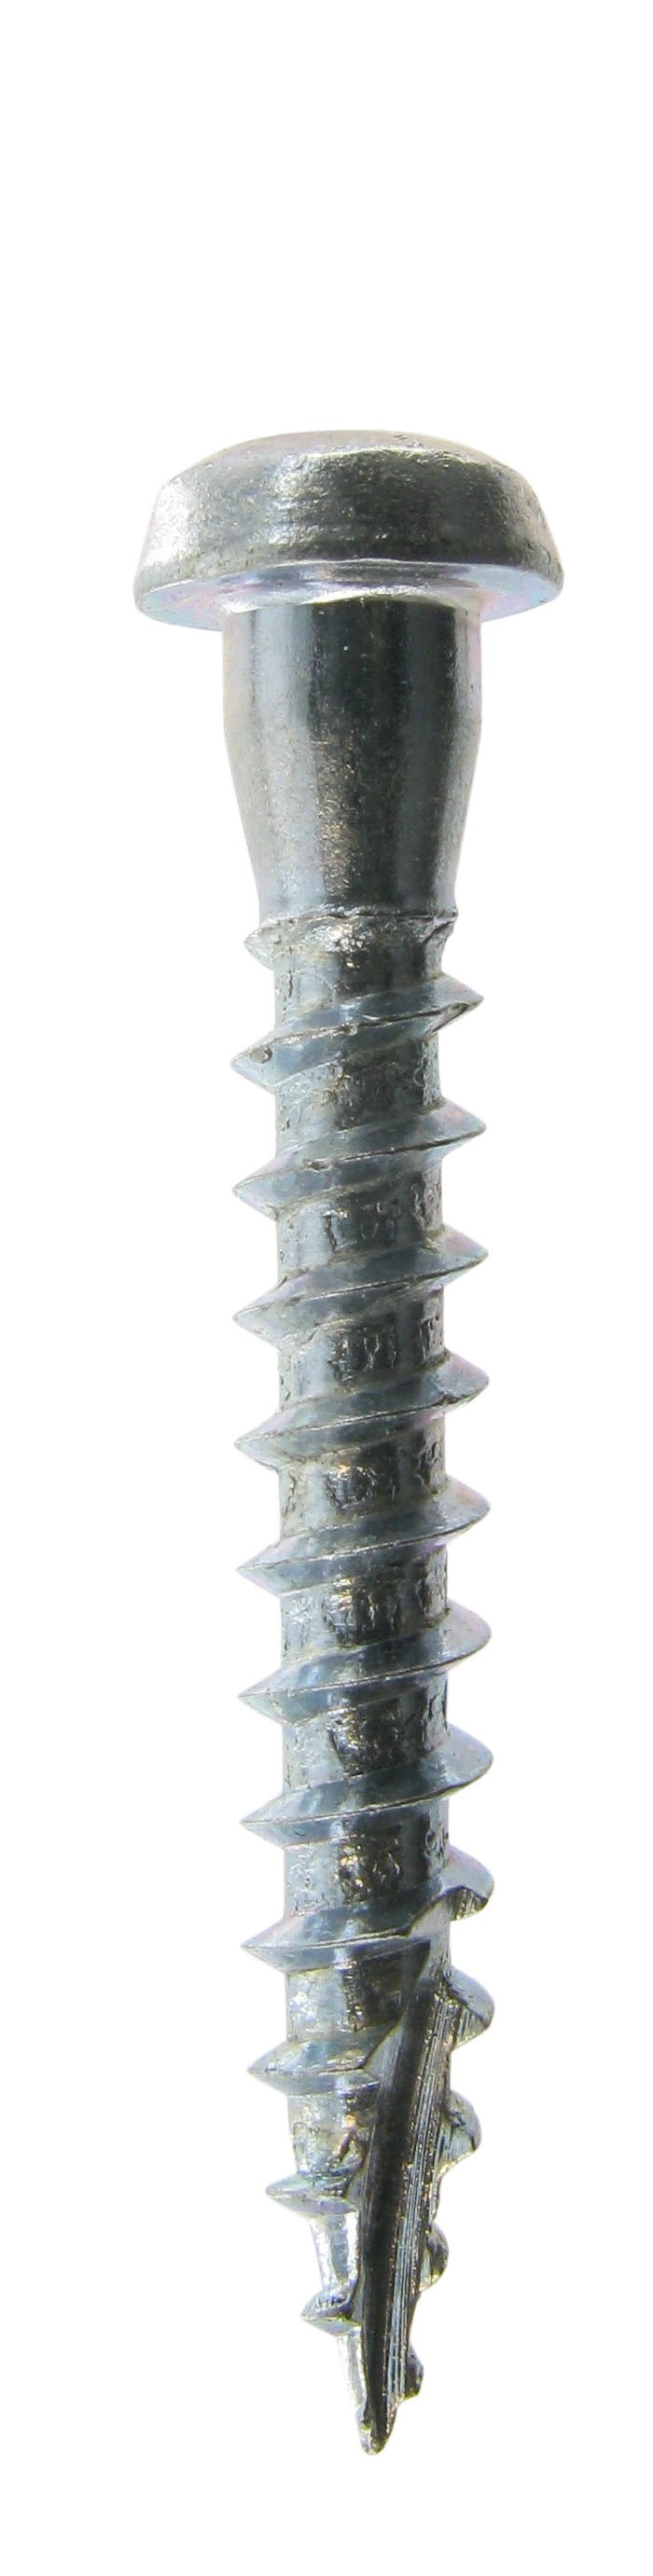 Houtschroef, houtbouwschroef met zwarte kop voor verbinders TORX CSA5.0X35PB-R